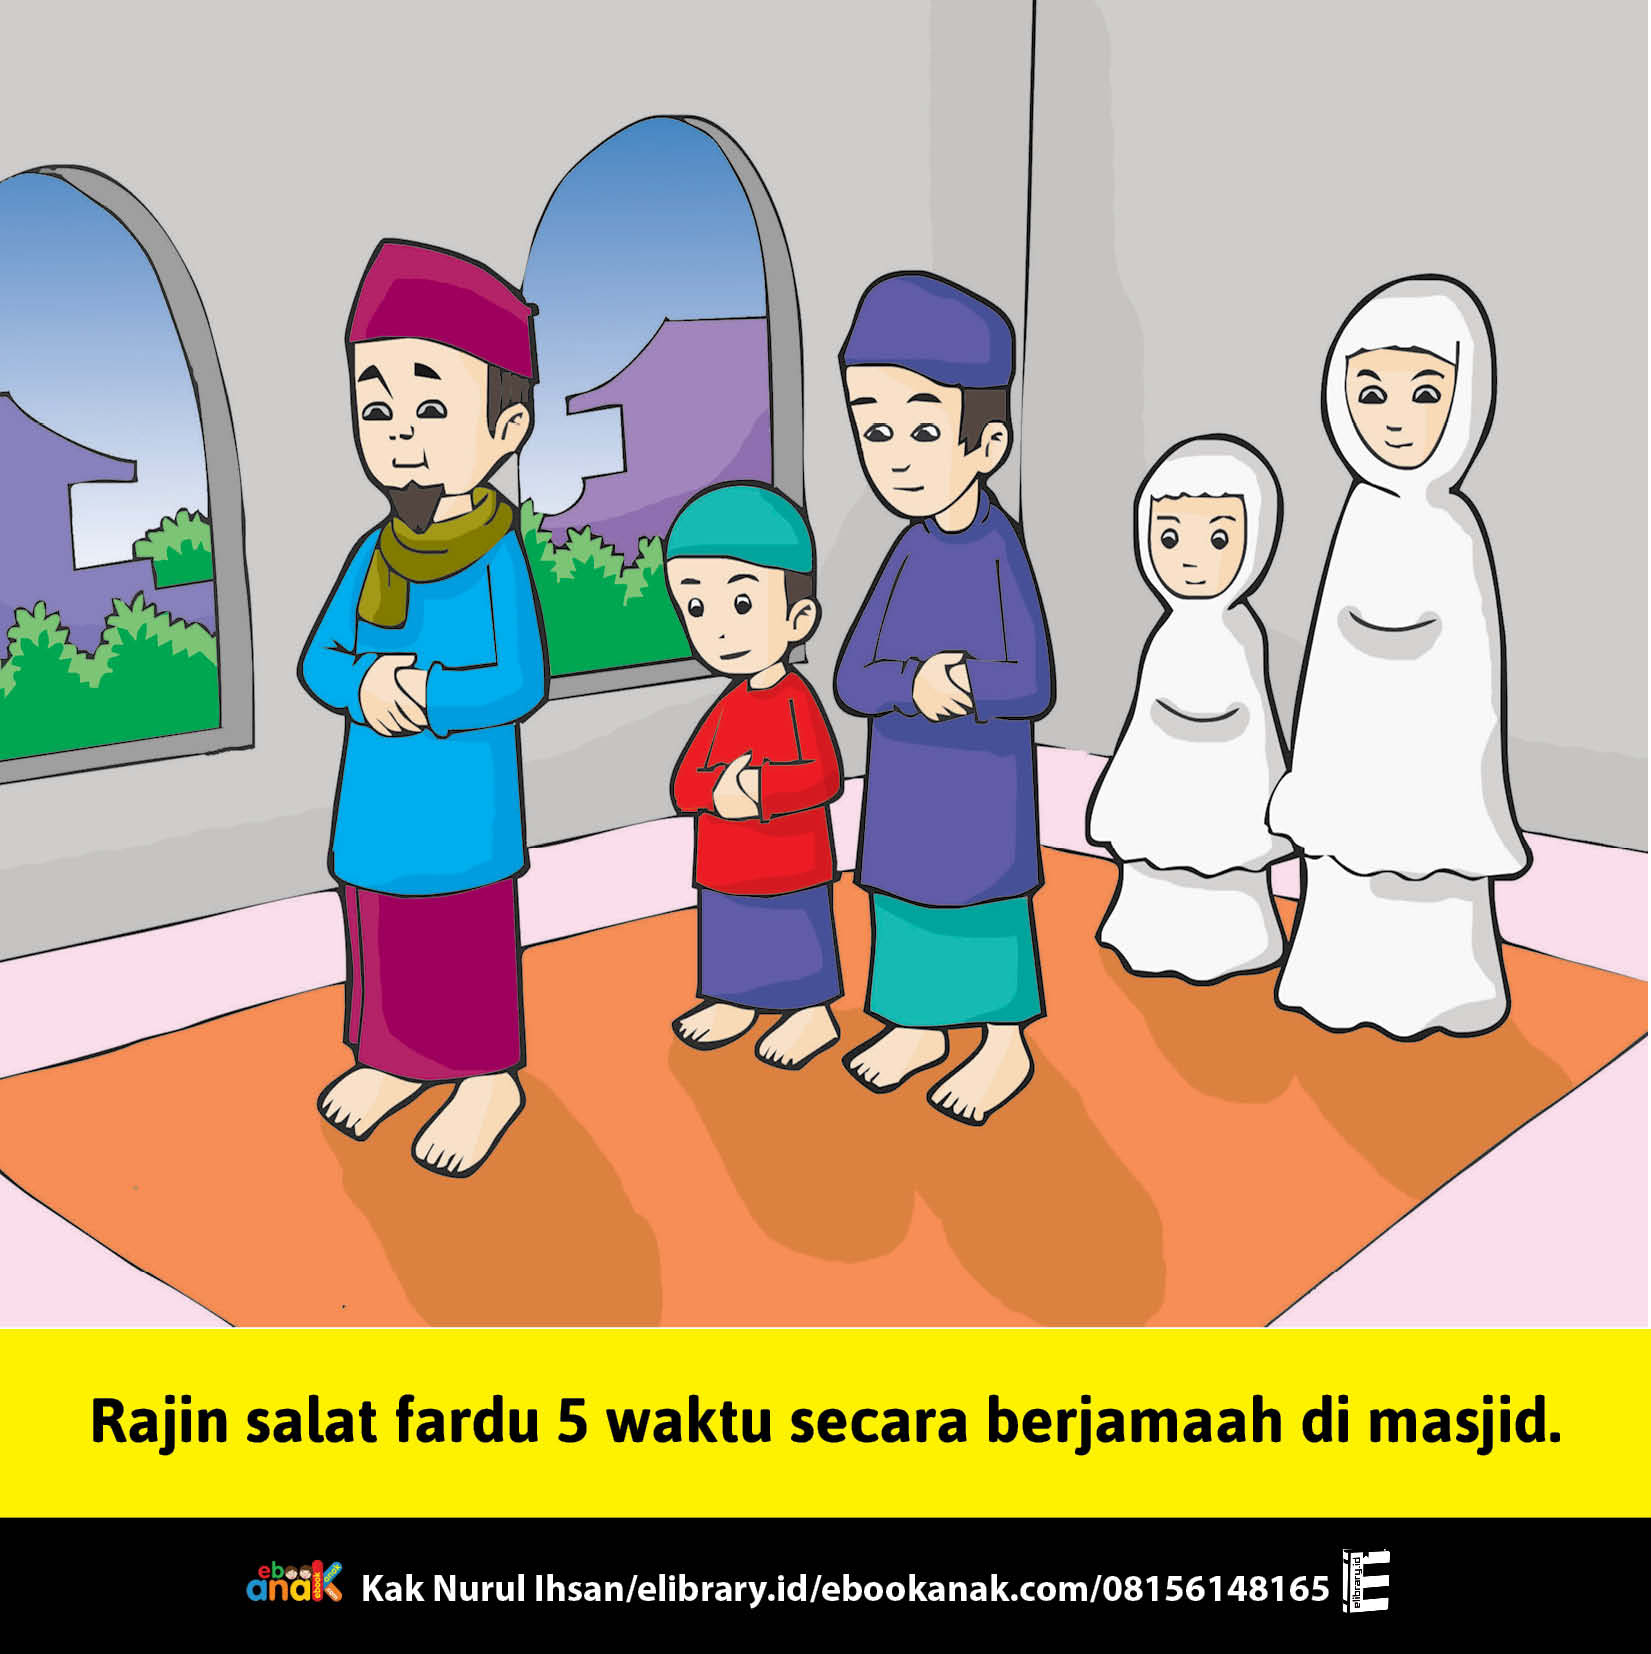 24. rajin salat fardu 5 waktu secara berjamaah di masjid, 33 Pesan Nabi Muhammad untuk Anak Muslim (ebookanak.com)